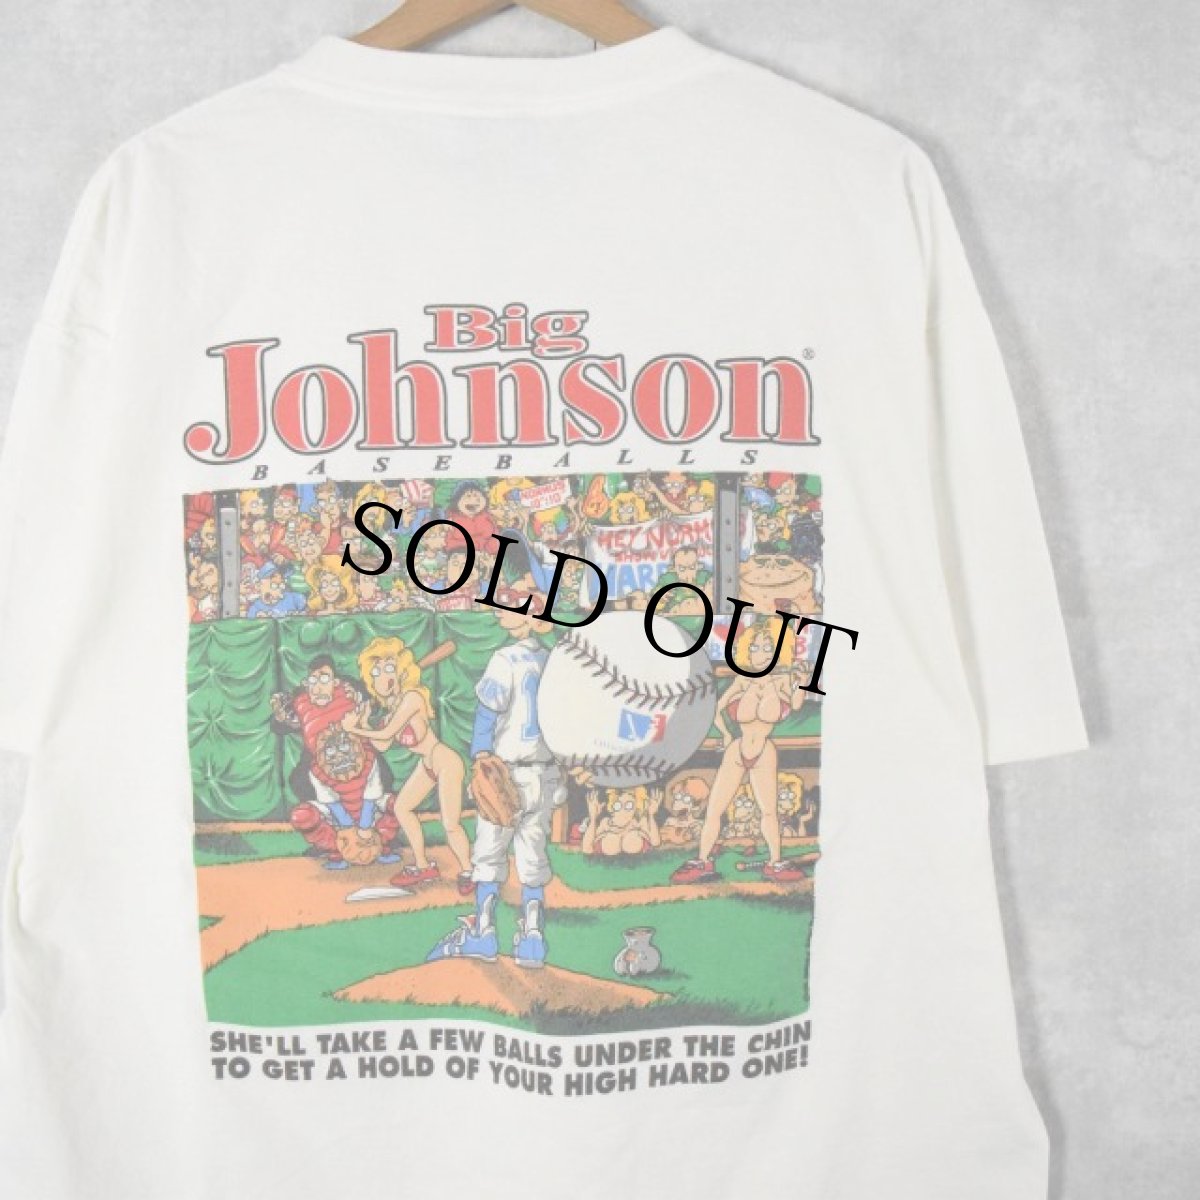 画像1: 90's BIG JOHNSON "BASEBALLS" シュールイラスト エロTシャツ XL (1)